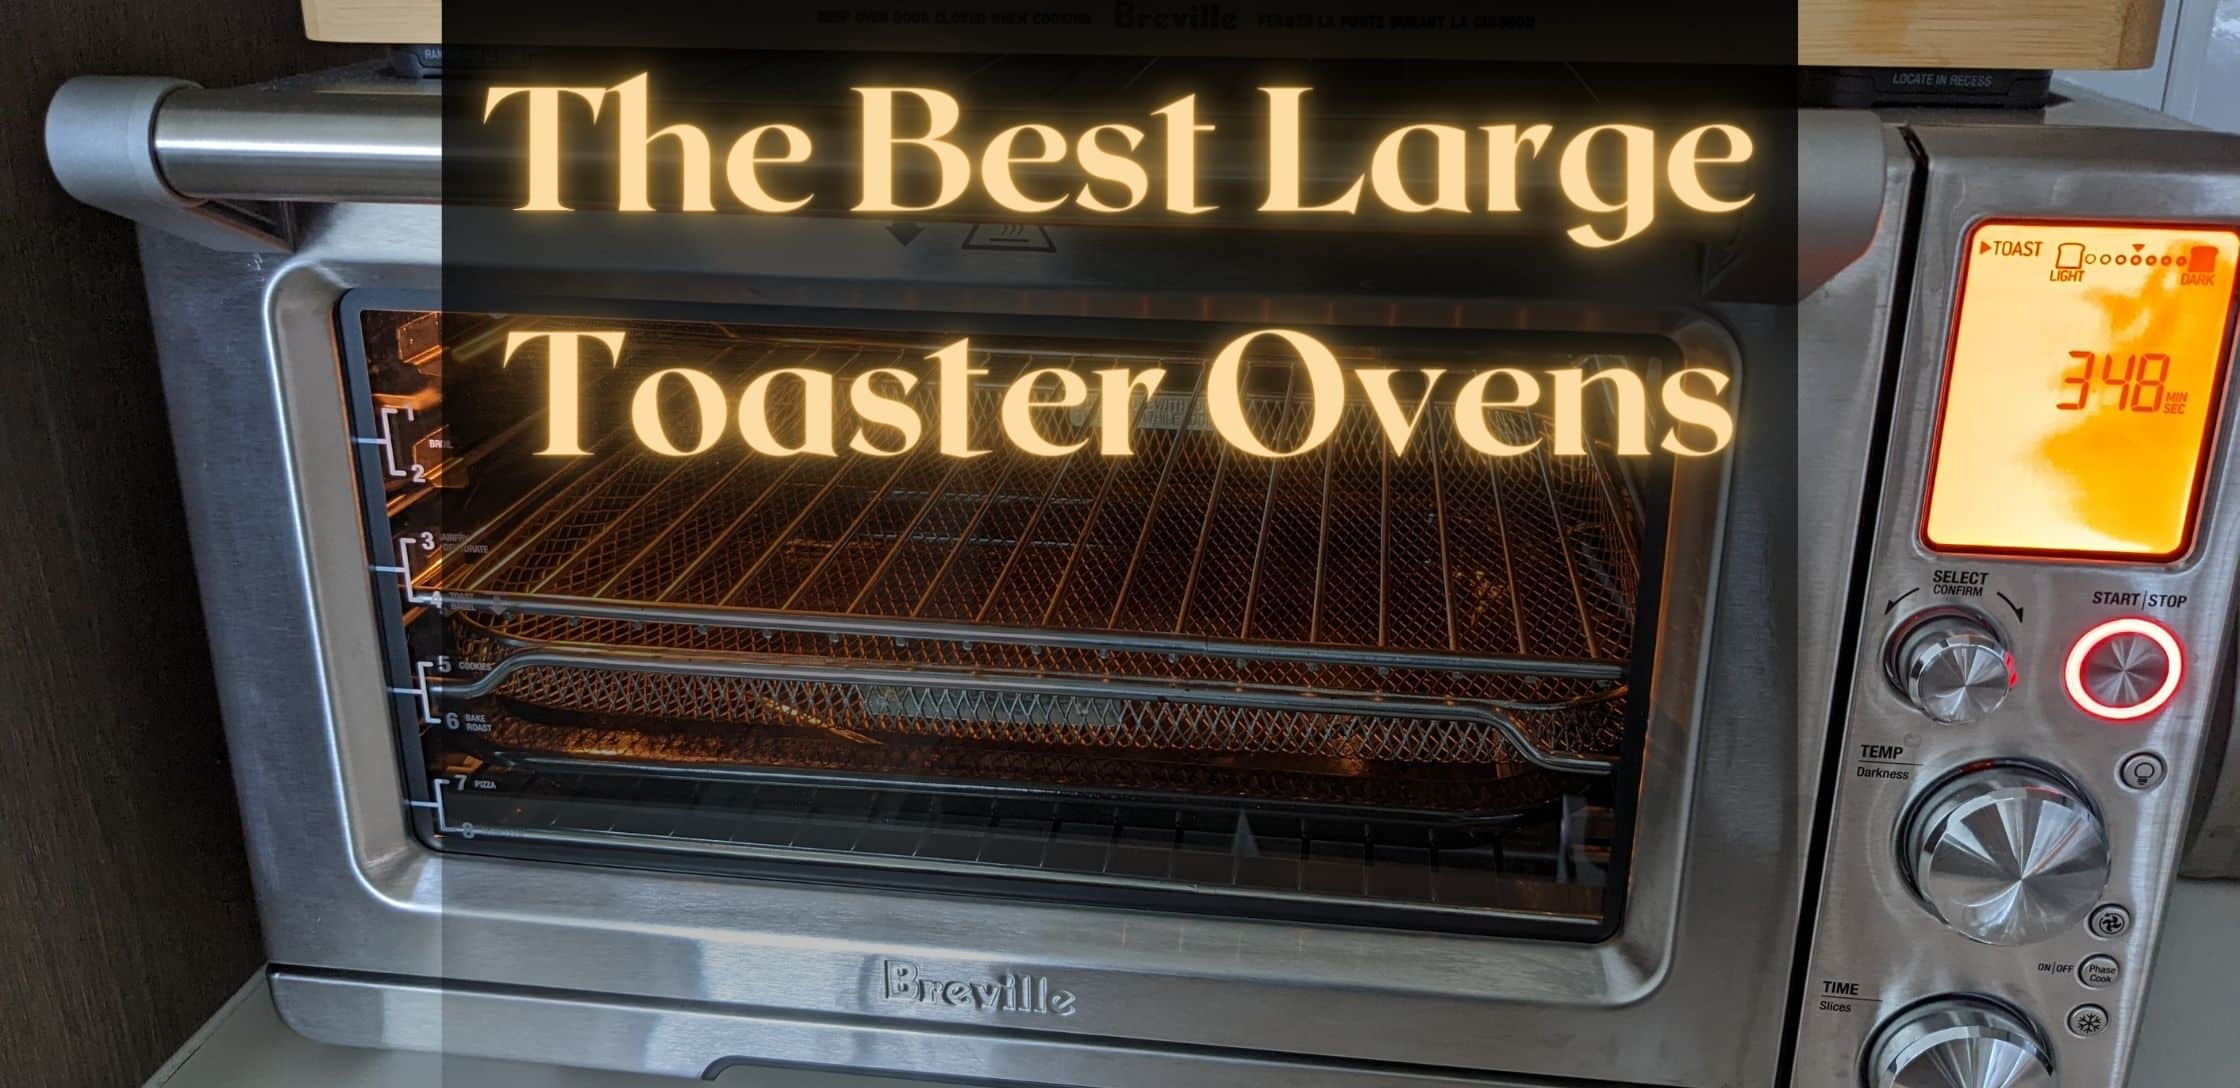 https://cookgem.com/wp-content/uploads/2022/07/best-larger-toaster-ovens.jpg